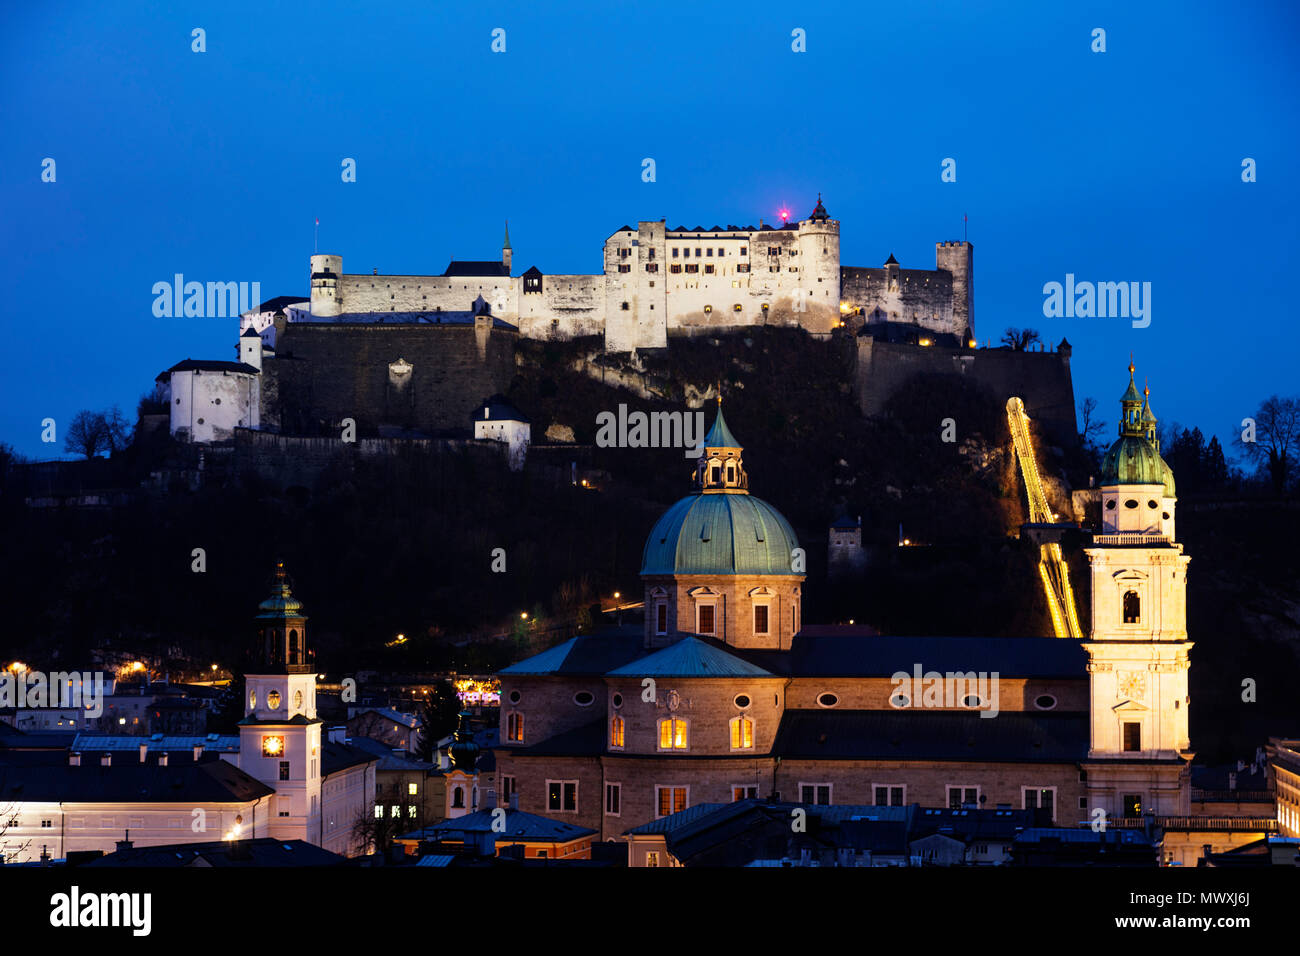 Vue sur la vieille ville, site du patrimoine mondial de l'UNESCO, et le château de Hohensalzburg au crépuscule, Salzburg, Autriche, Europe Banque D'Images